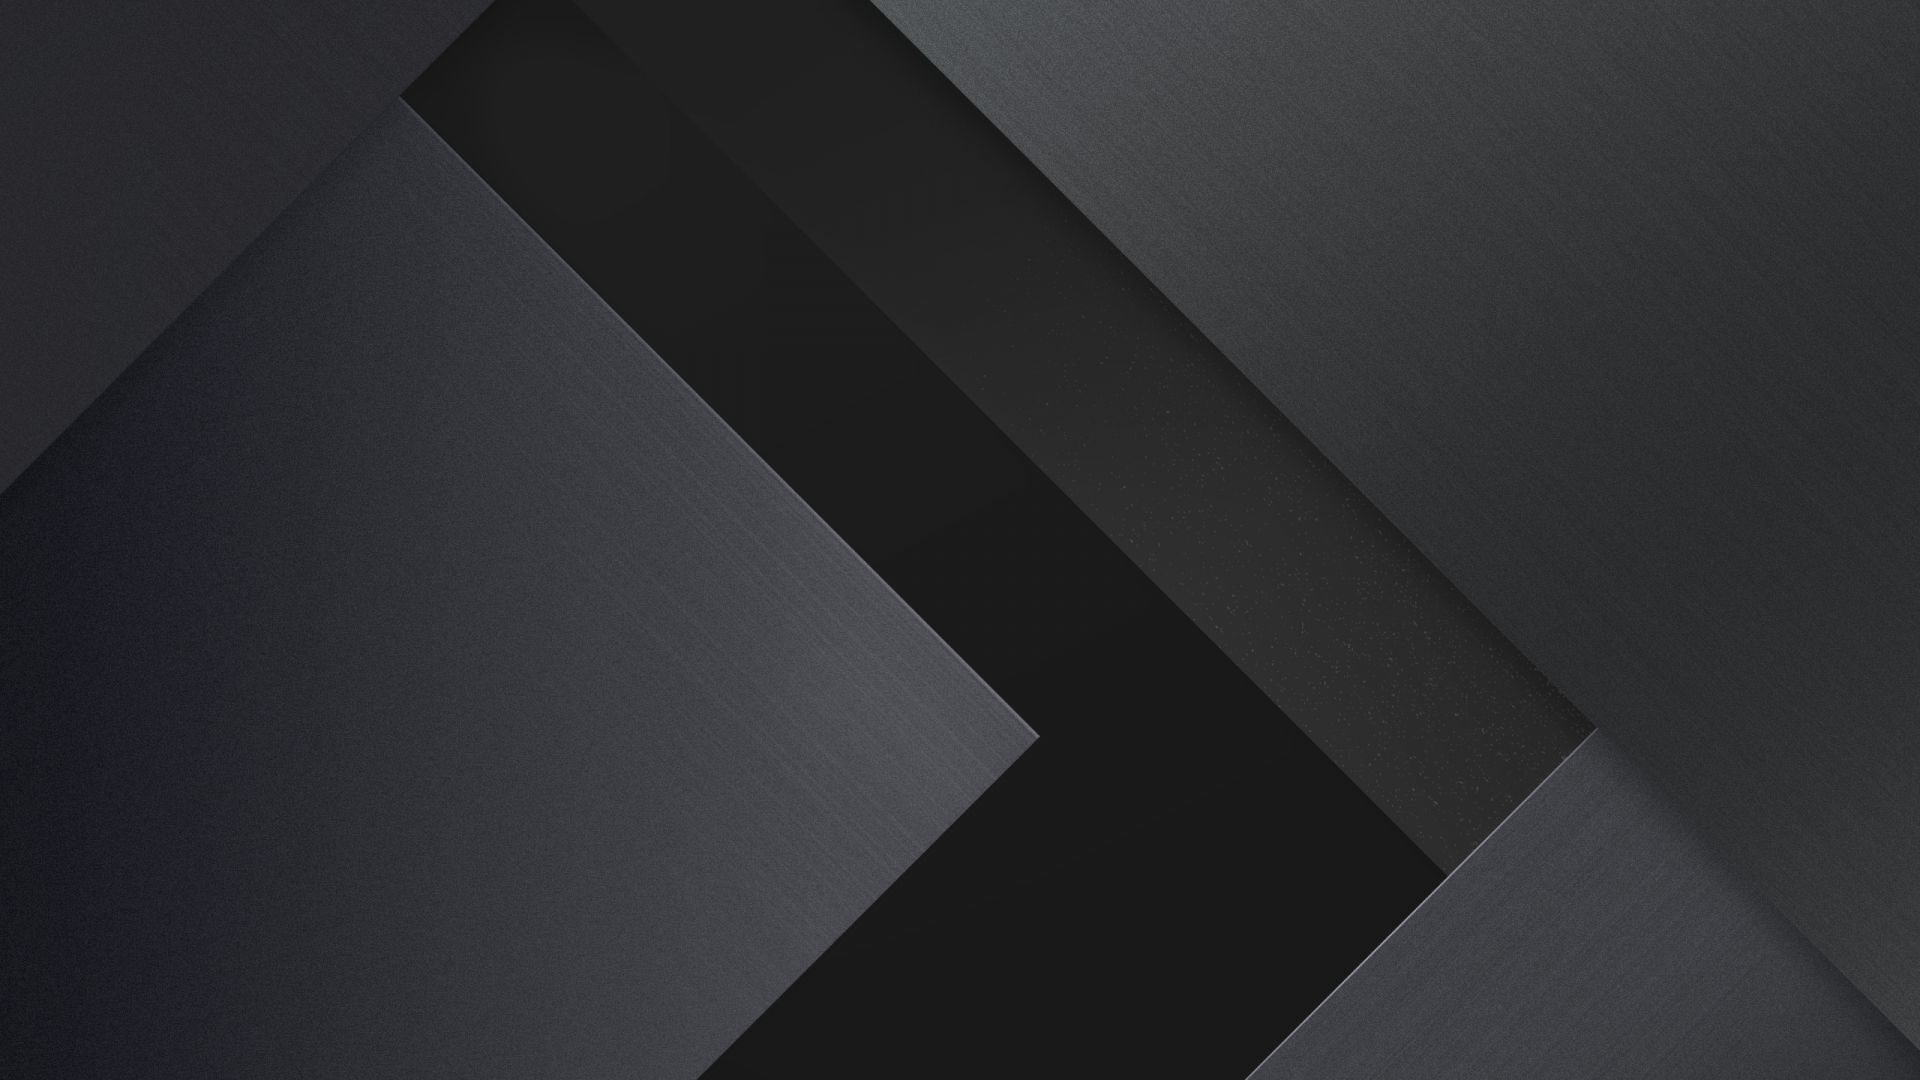 Wallpaper Material design, geometric, stock, dark black